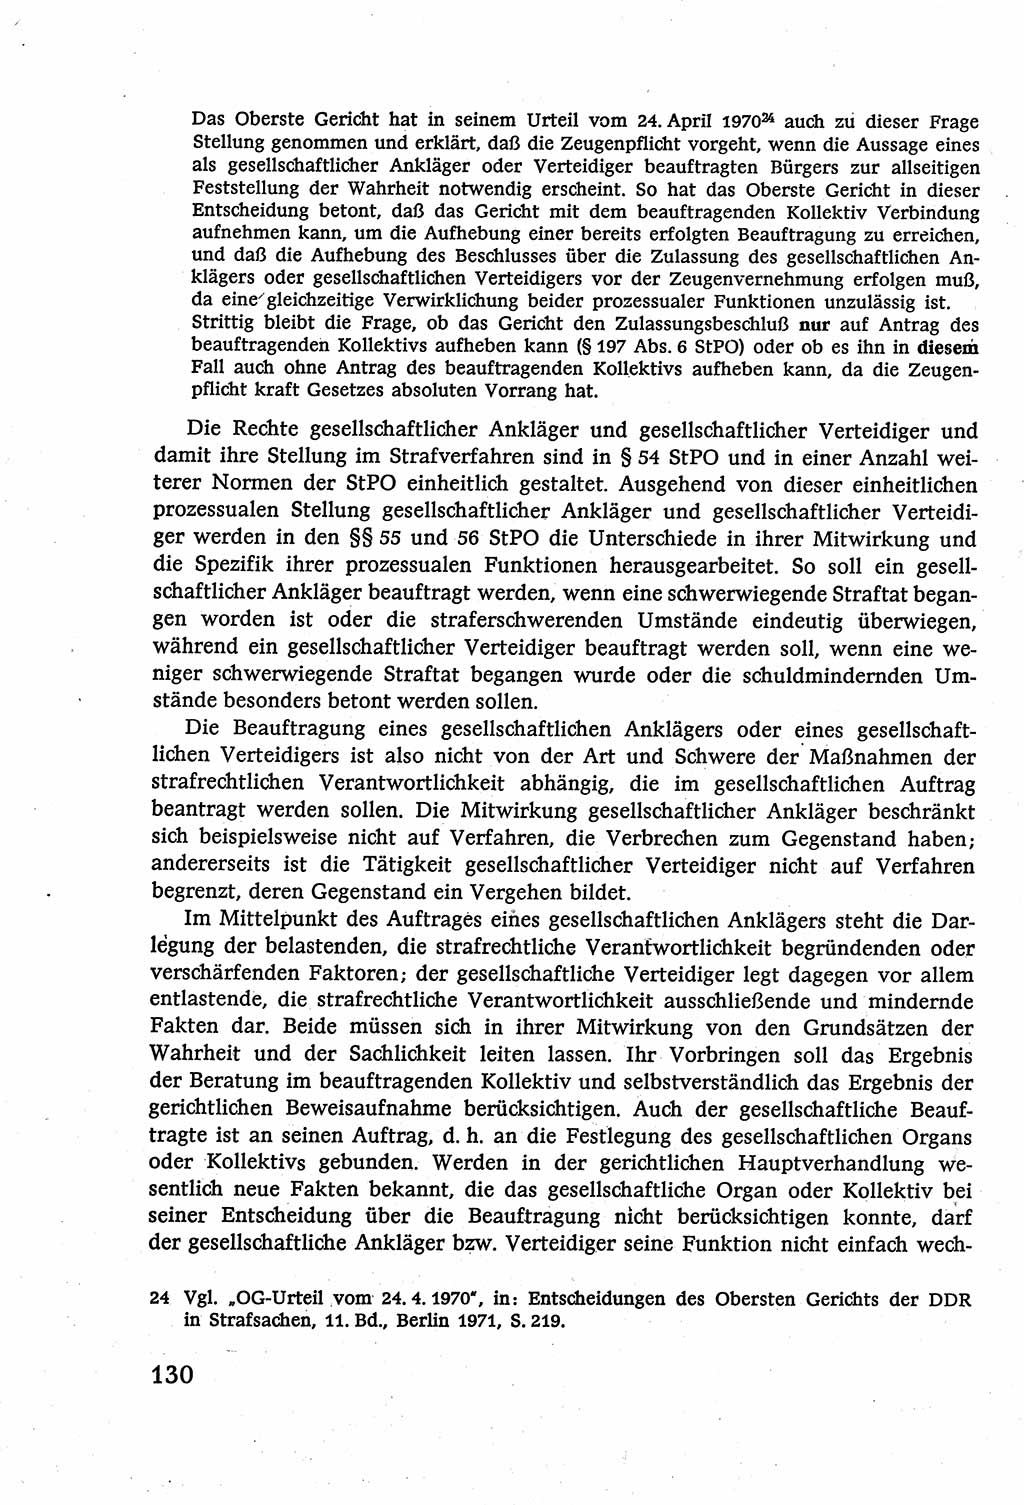 Strafverfahrensrecht [Deutsche Demokratische Republik (DDR)], Lehrbuch 1977, Seite 130 (Strafverf.-R. DDR Lb. 1977, S. 130)